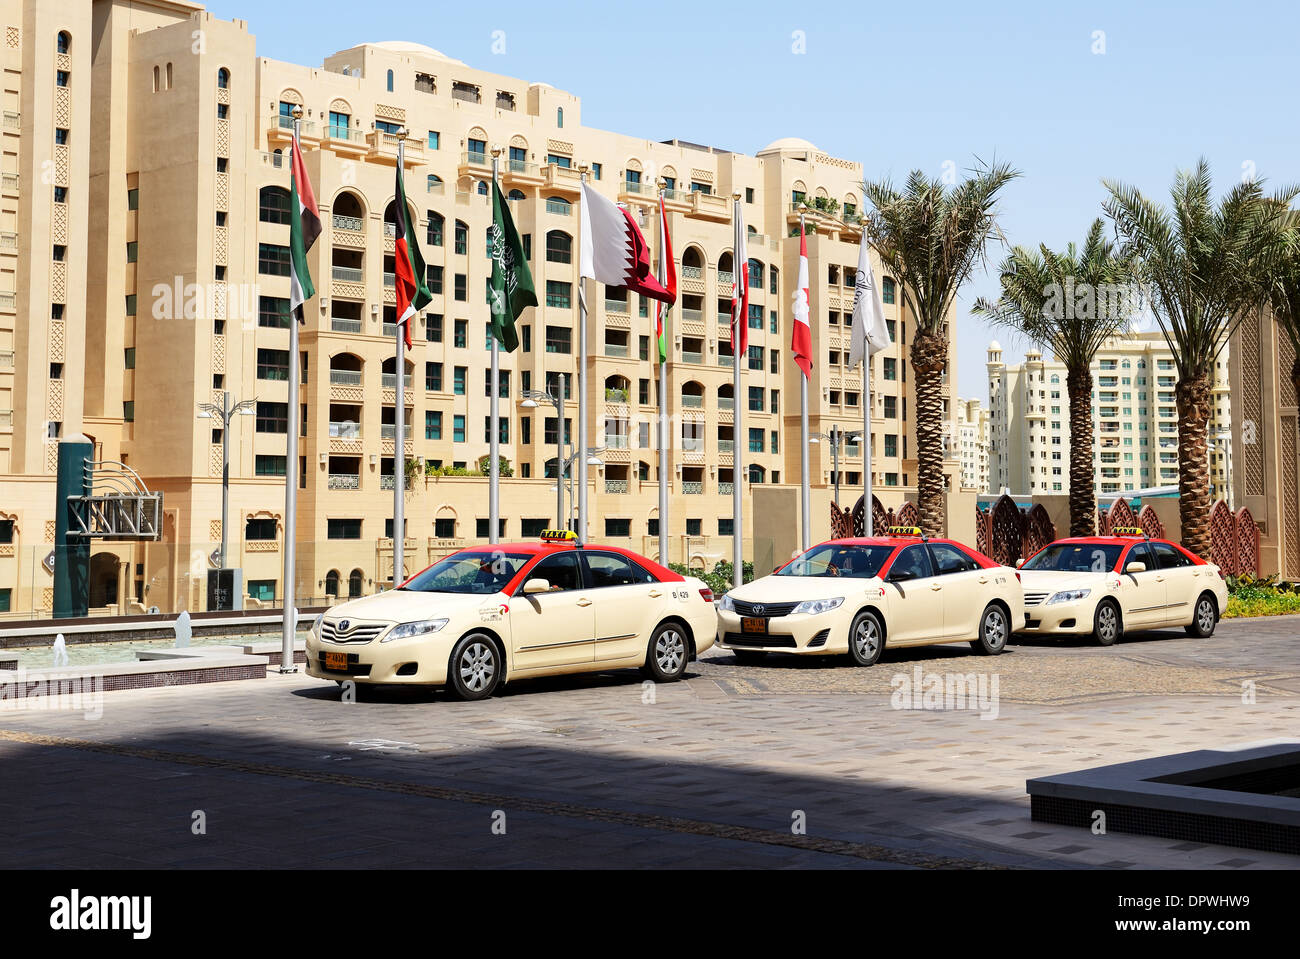 Die Dubai Taxi Autos warten auf Kunden in der Nähe von Hotel, Dubai, Vereinigte Arabische Emirate. Stockfoto